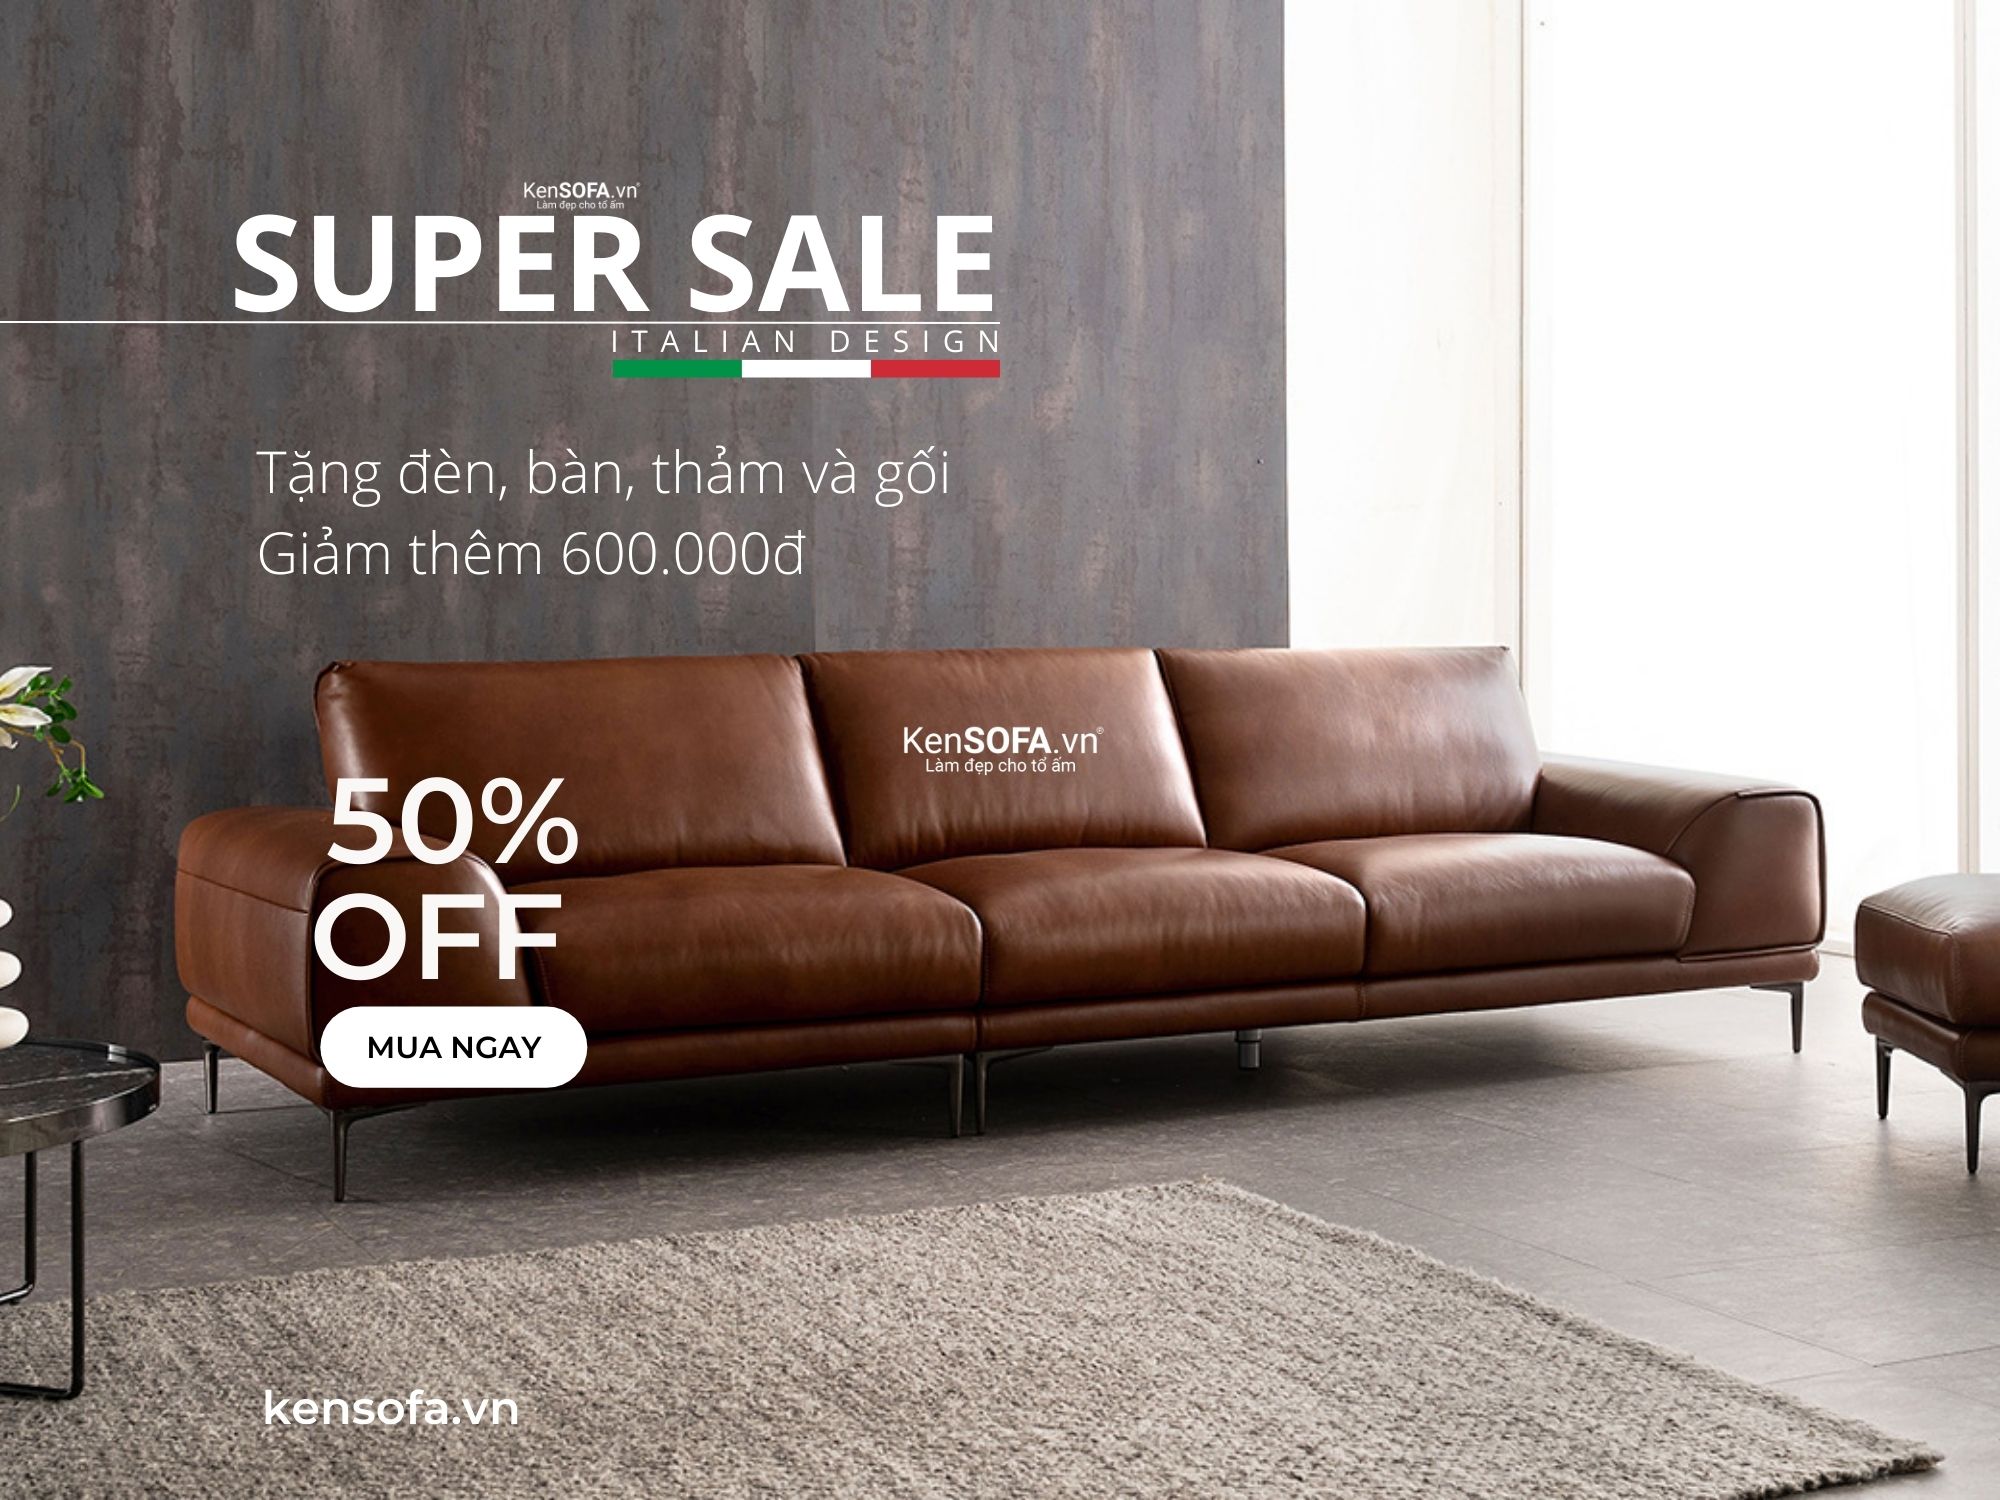 KenSOFA - Địa chỉ bán ghế sofa uy tín TPHCM - KenSOFA.vn